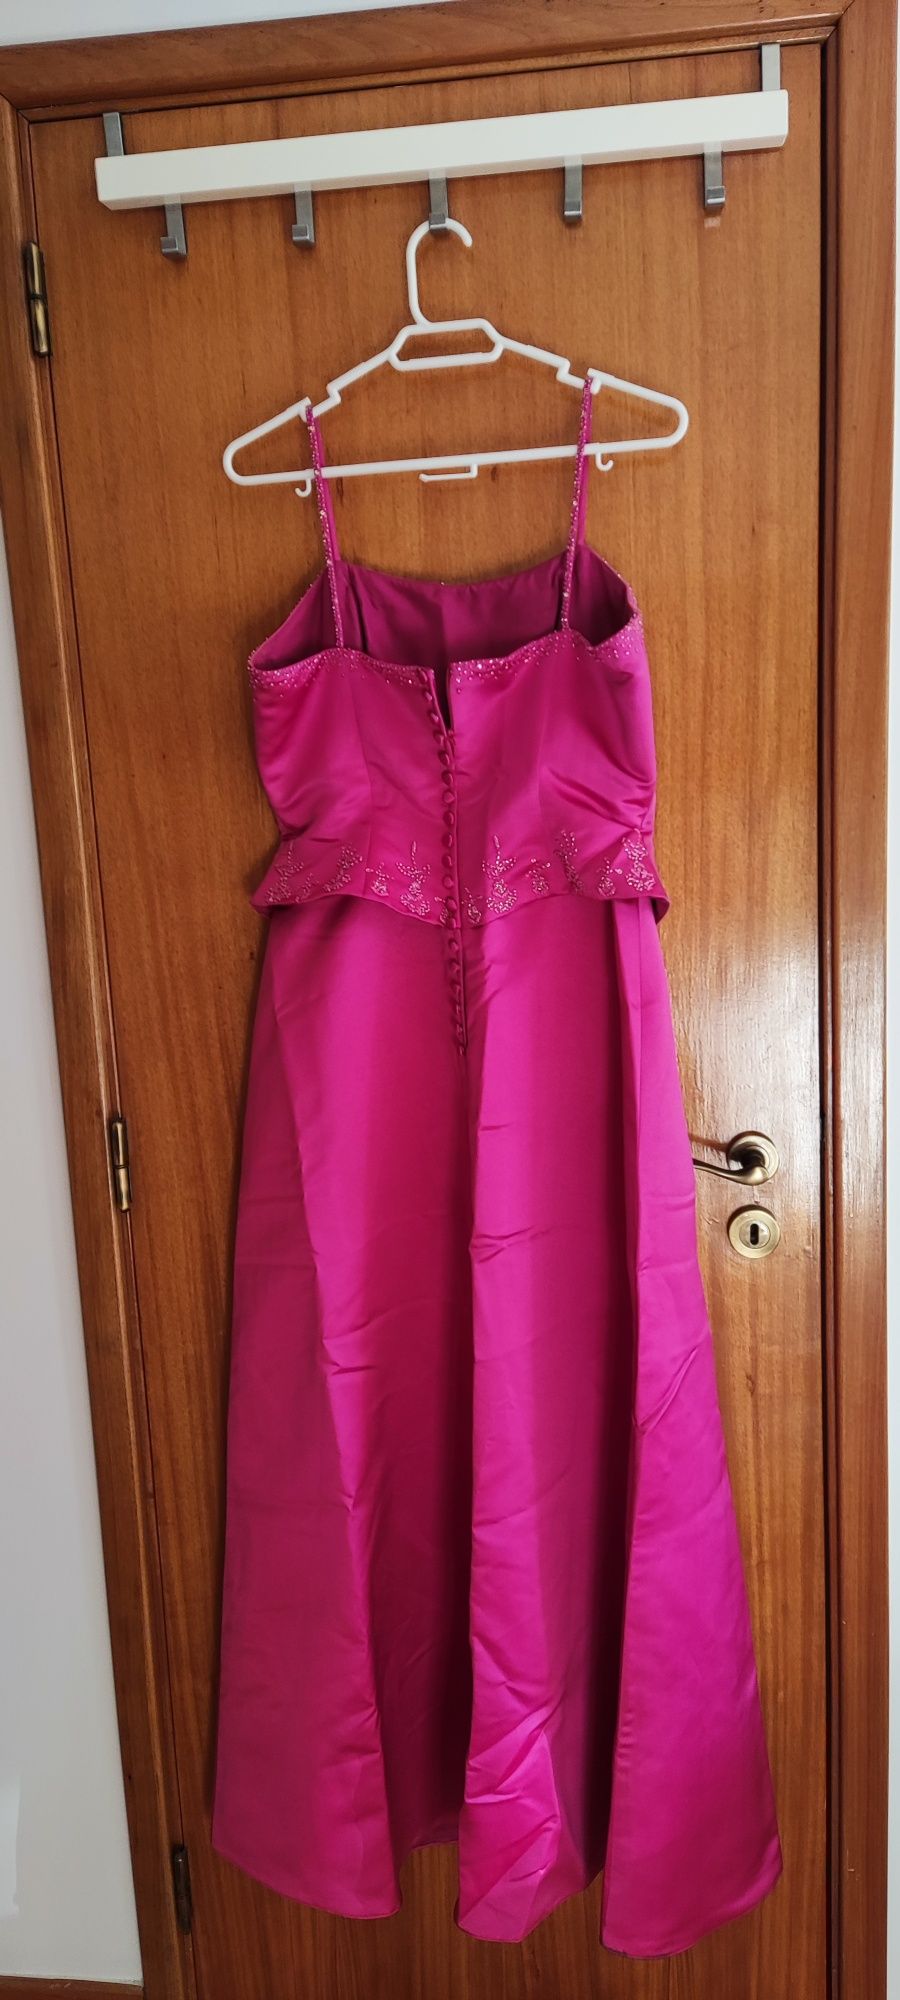 Vestido de cerimónia de alças, comprido e rosa com aplicos